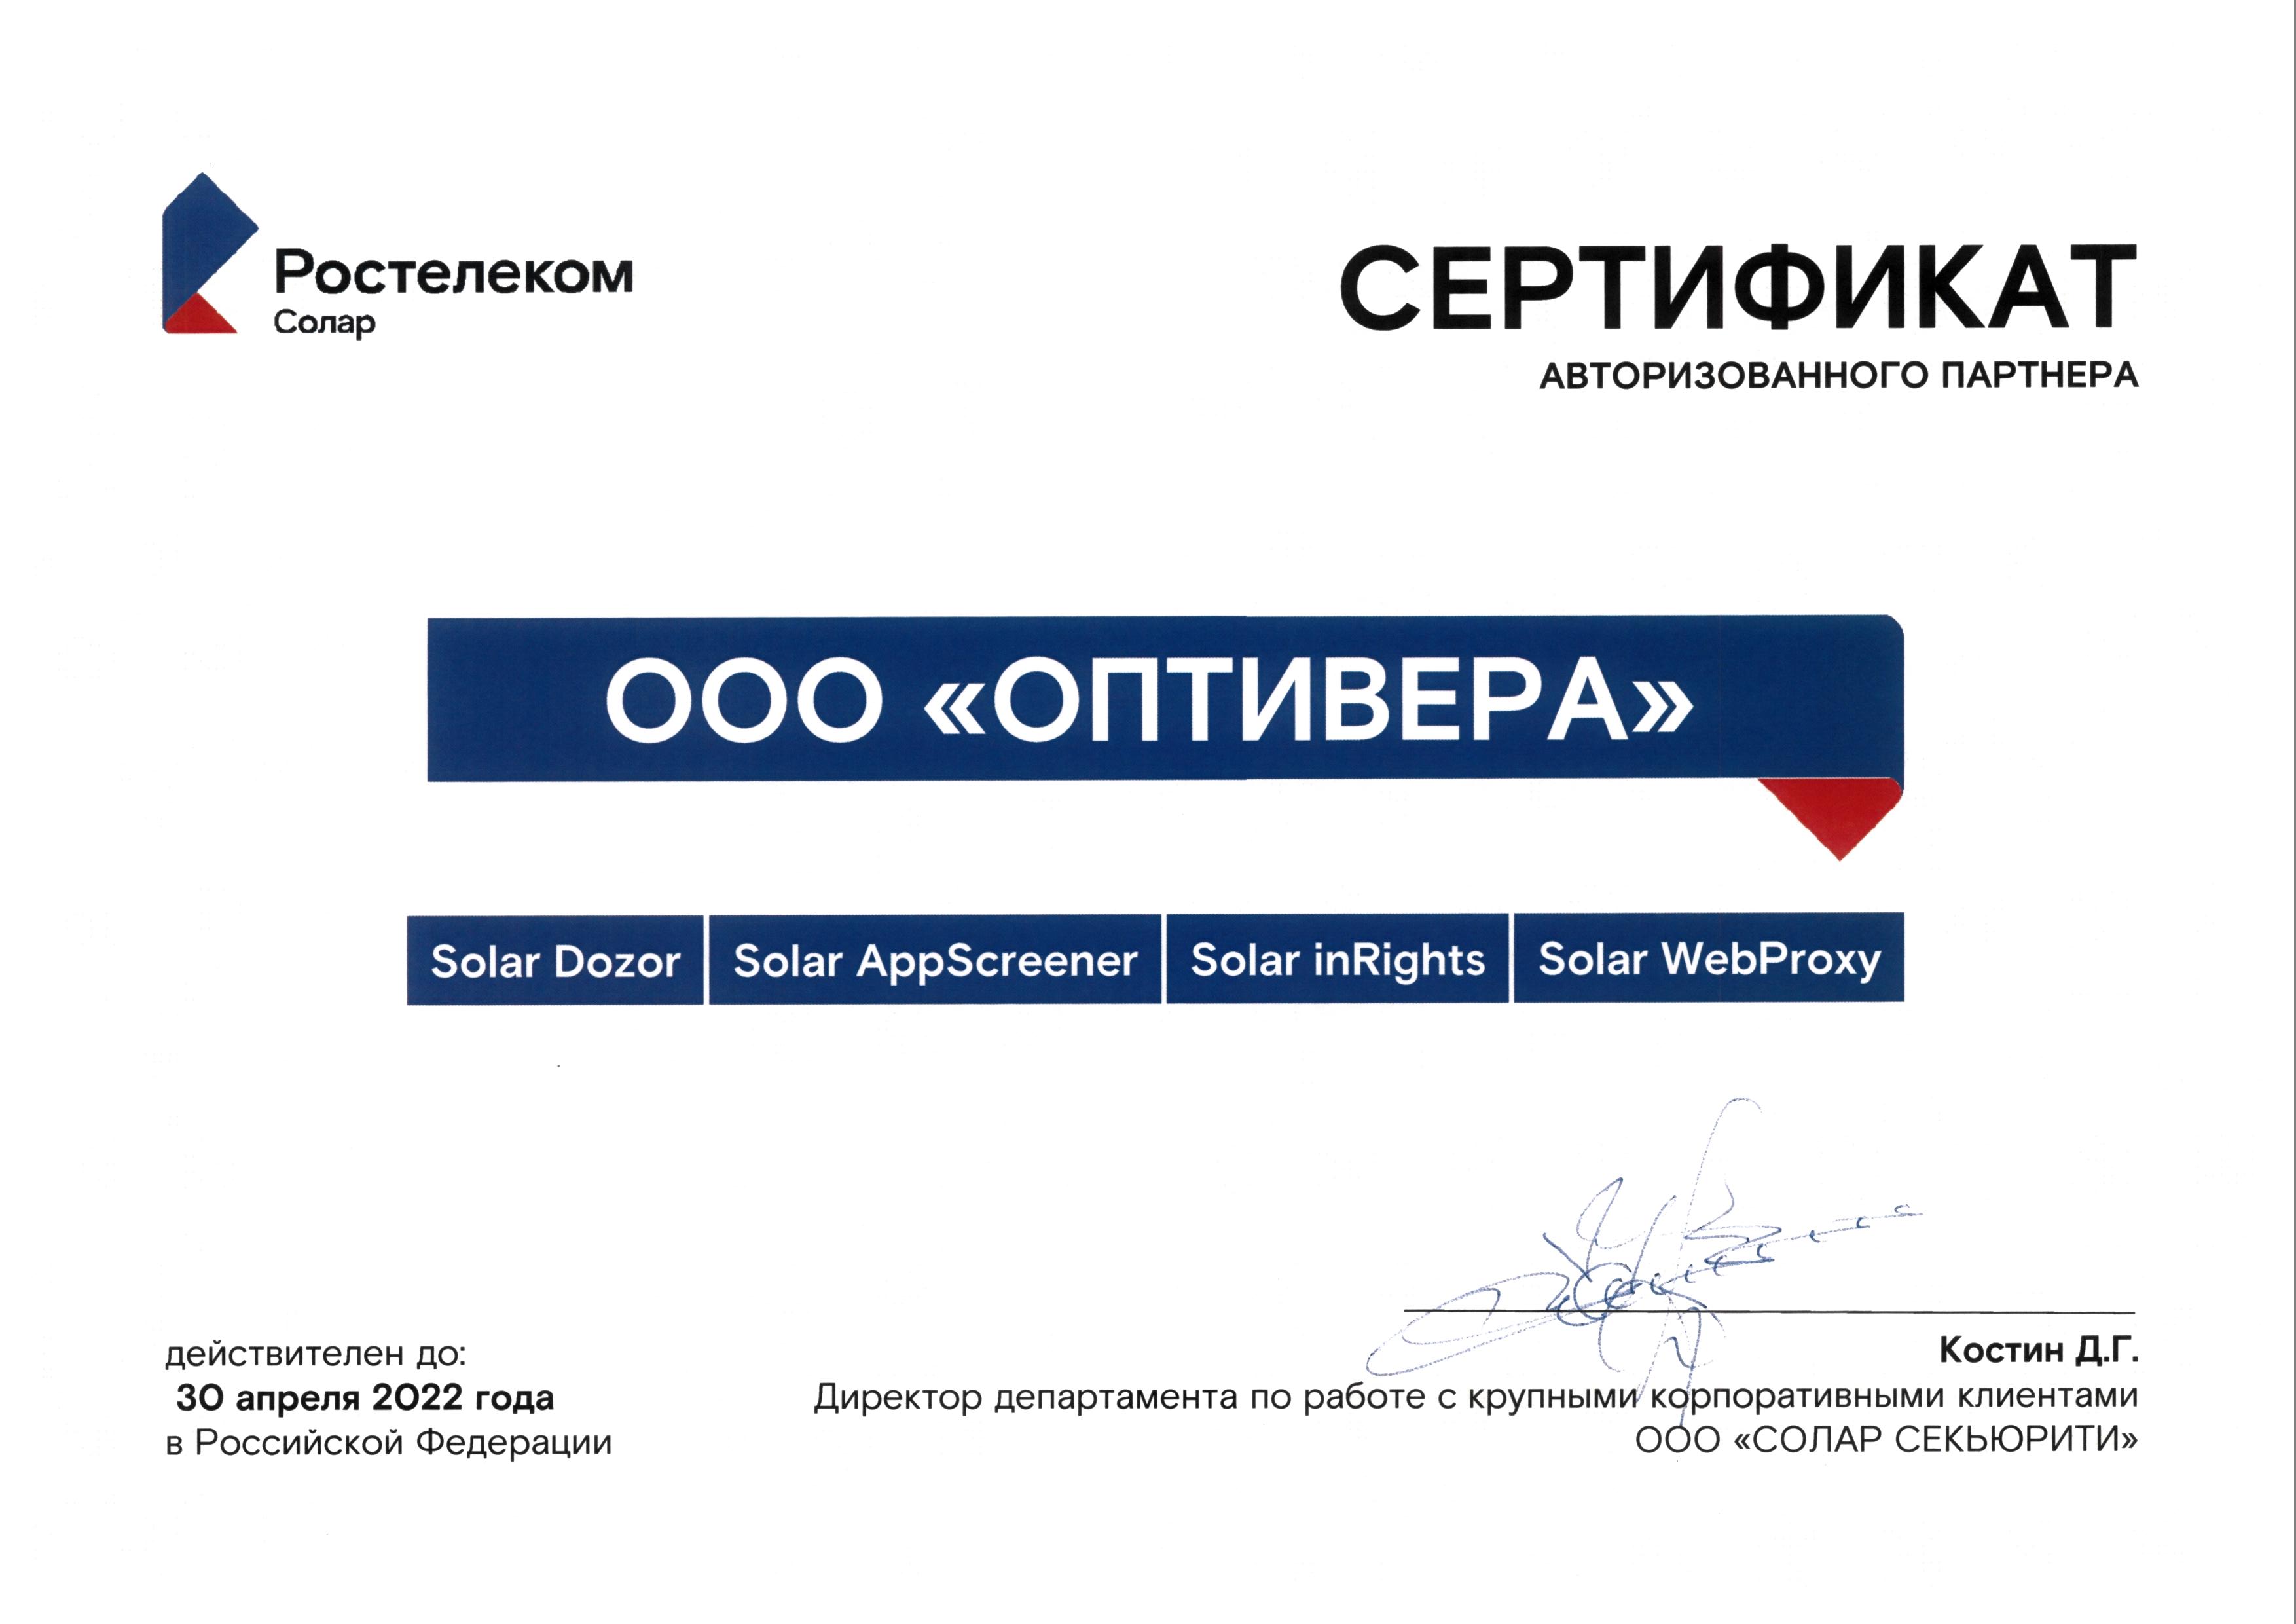 Оптивера получила статус авторизованного партнера компании "Ростелеком-Солар"